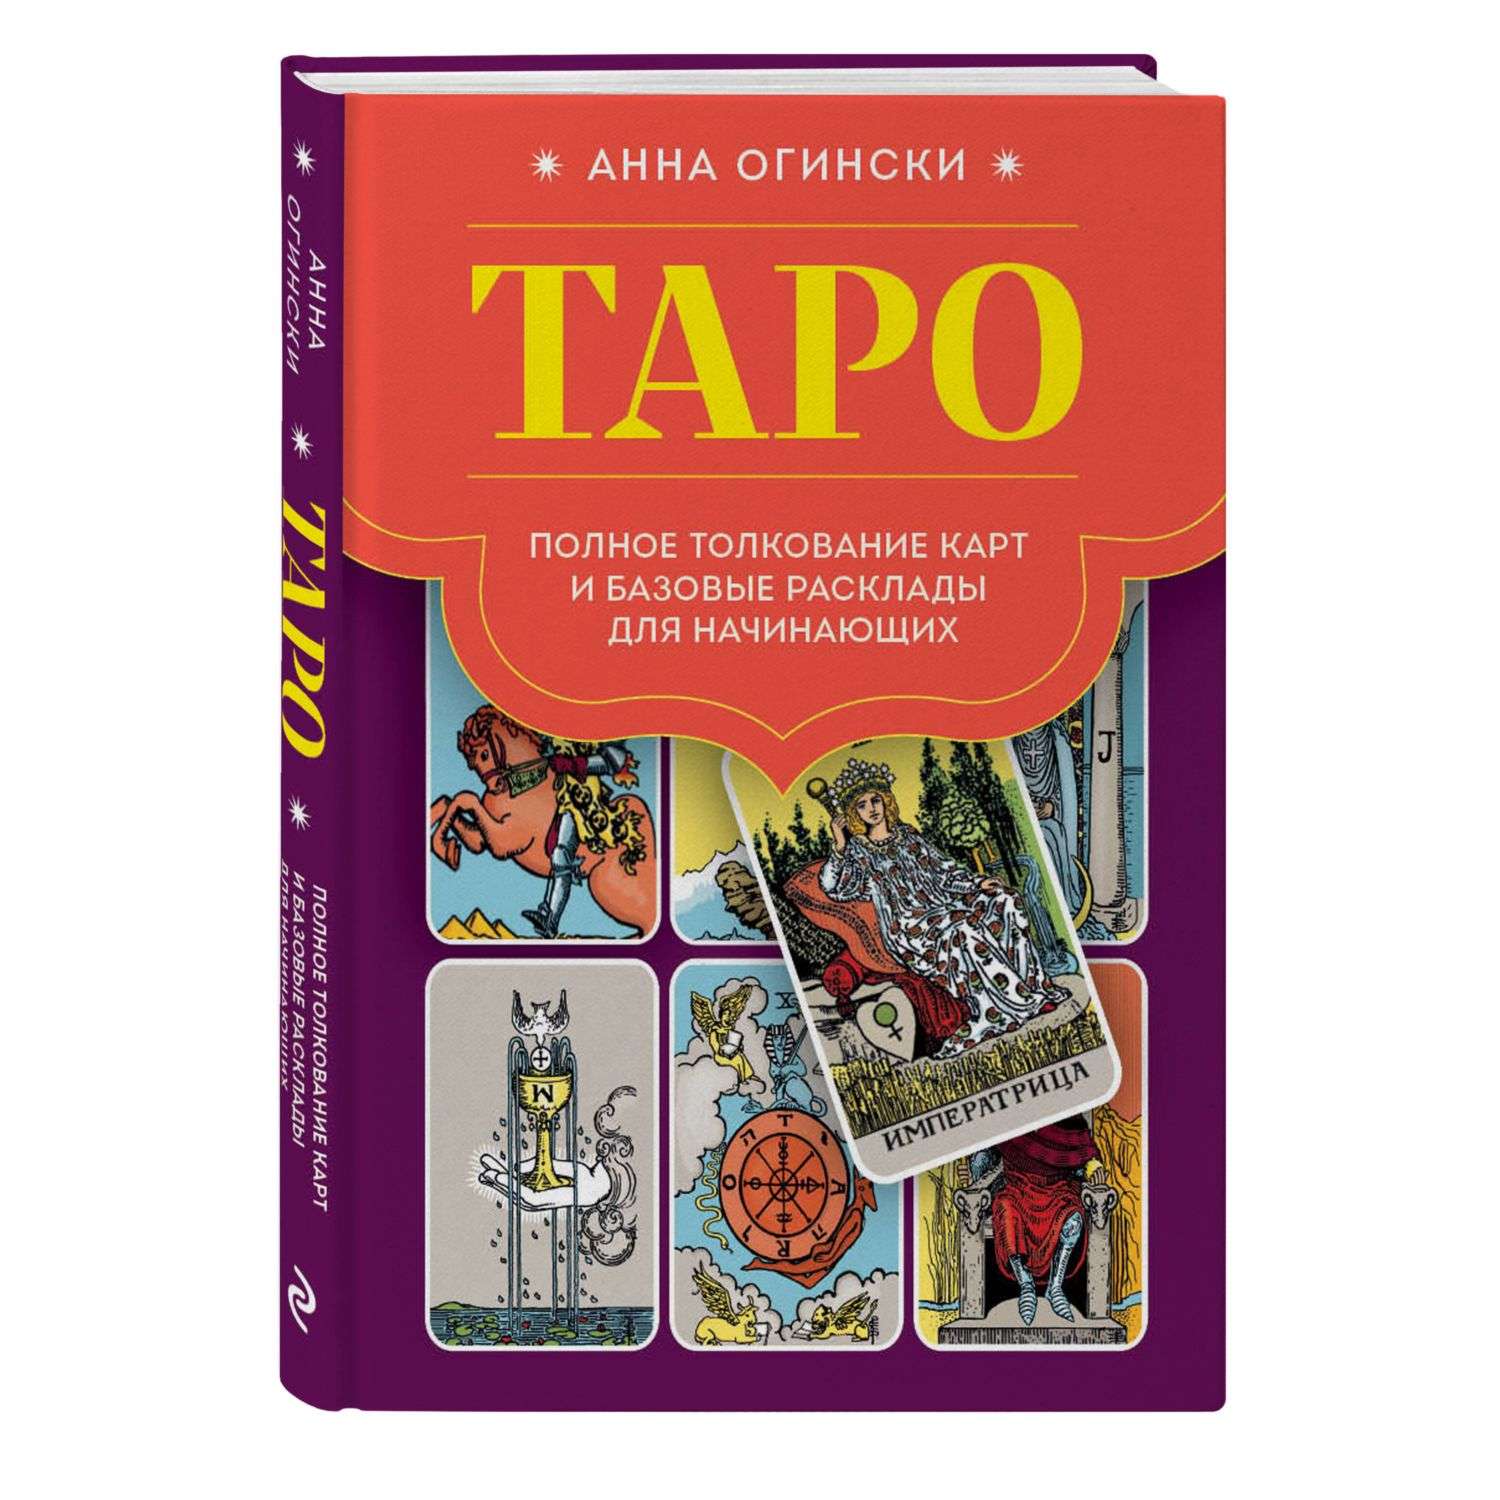 Книга Эксмо Таро Полное толкование карт и базовые расклады для начинающих - фото 1